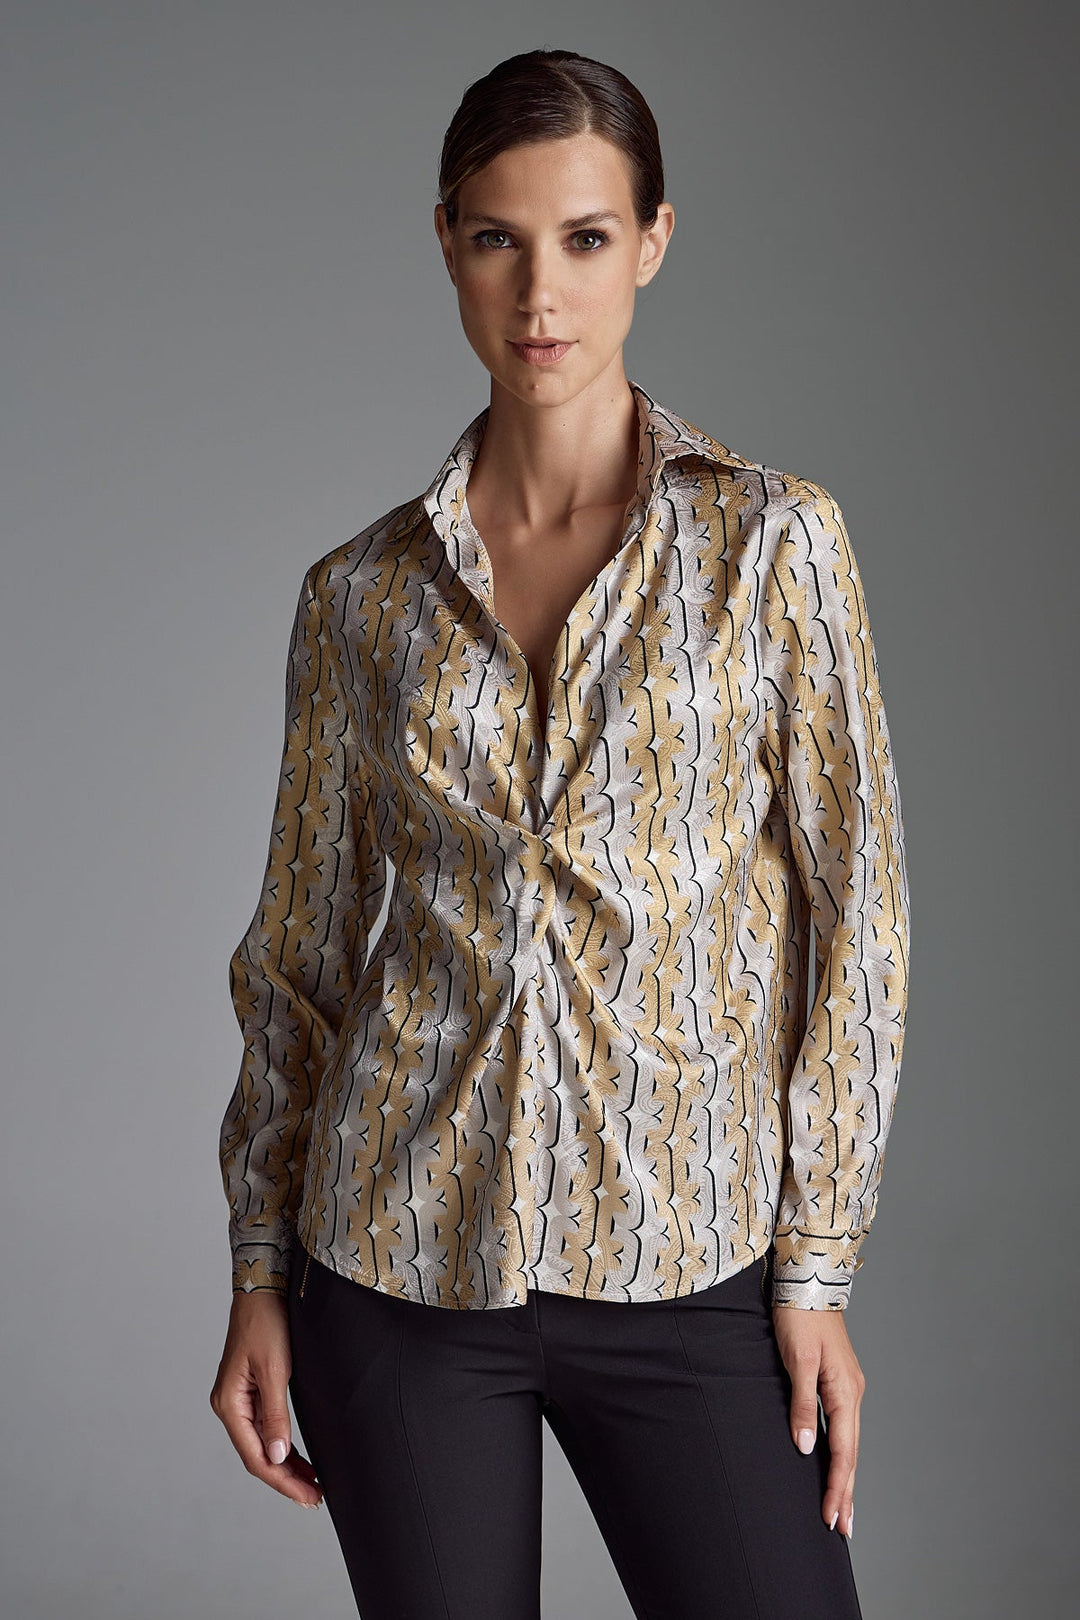 Μπλούζα με δέσιμο και print αλυσίδες Figaro Fashion - A Collection Boutique